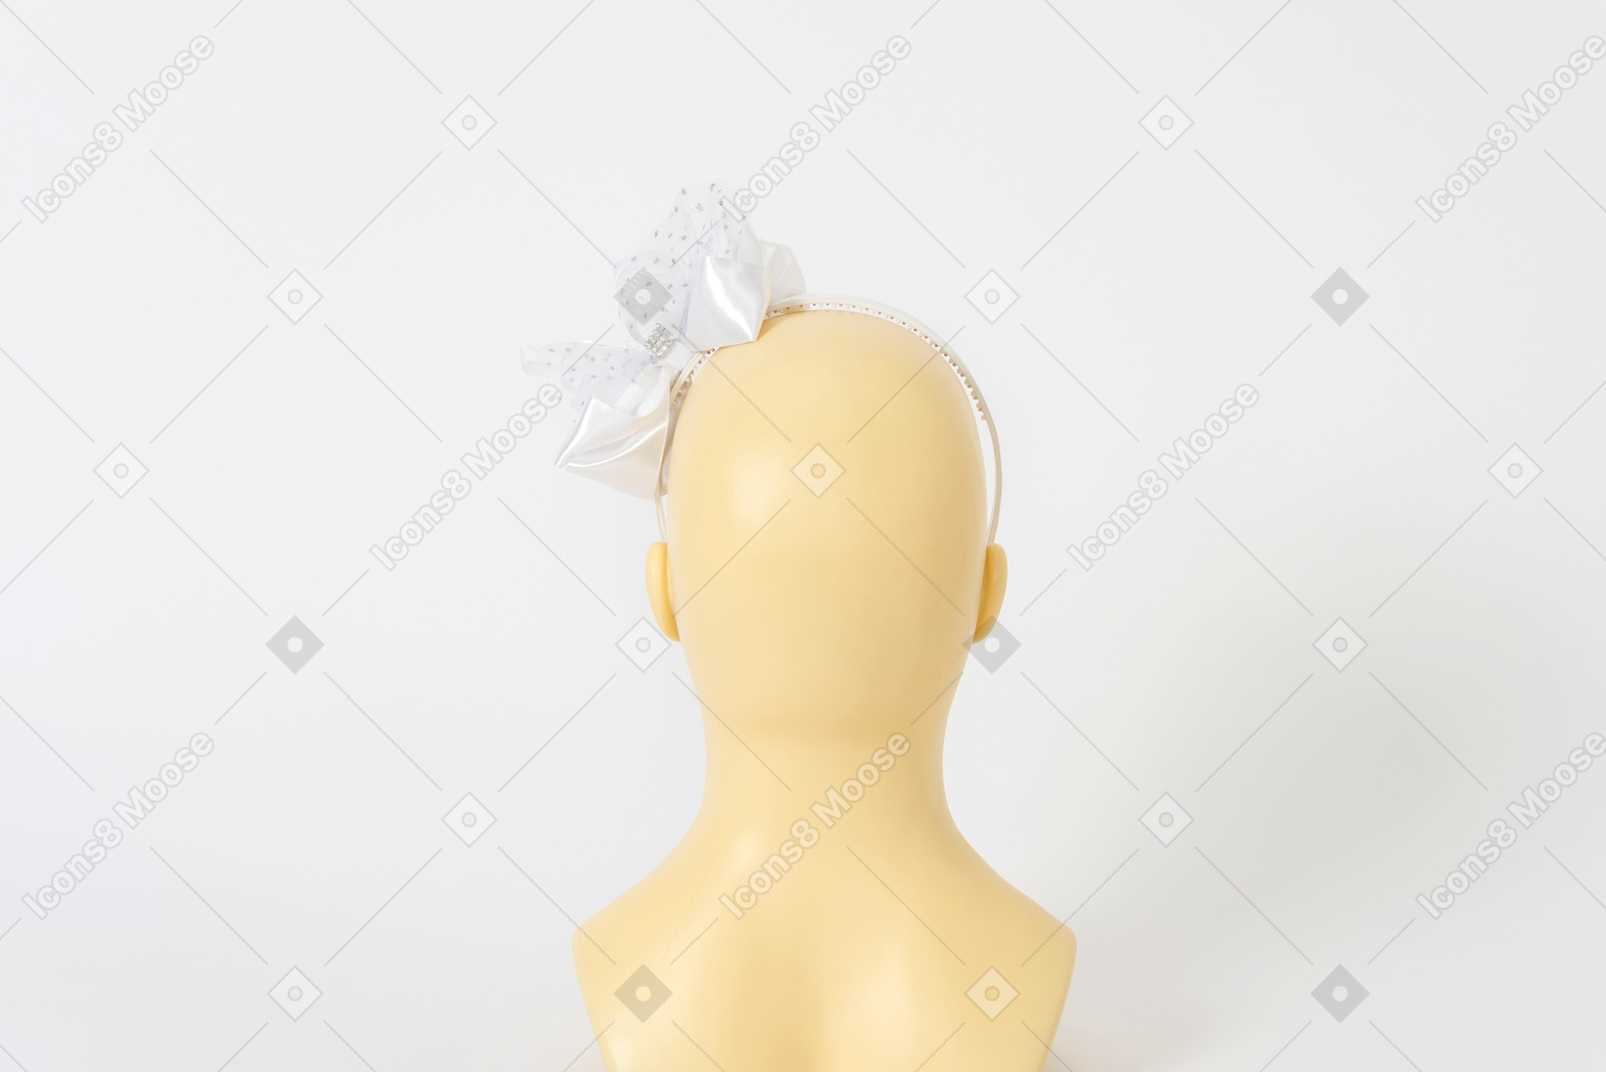 人体模特头上的蝴蝶结白色发带